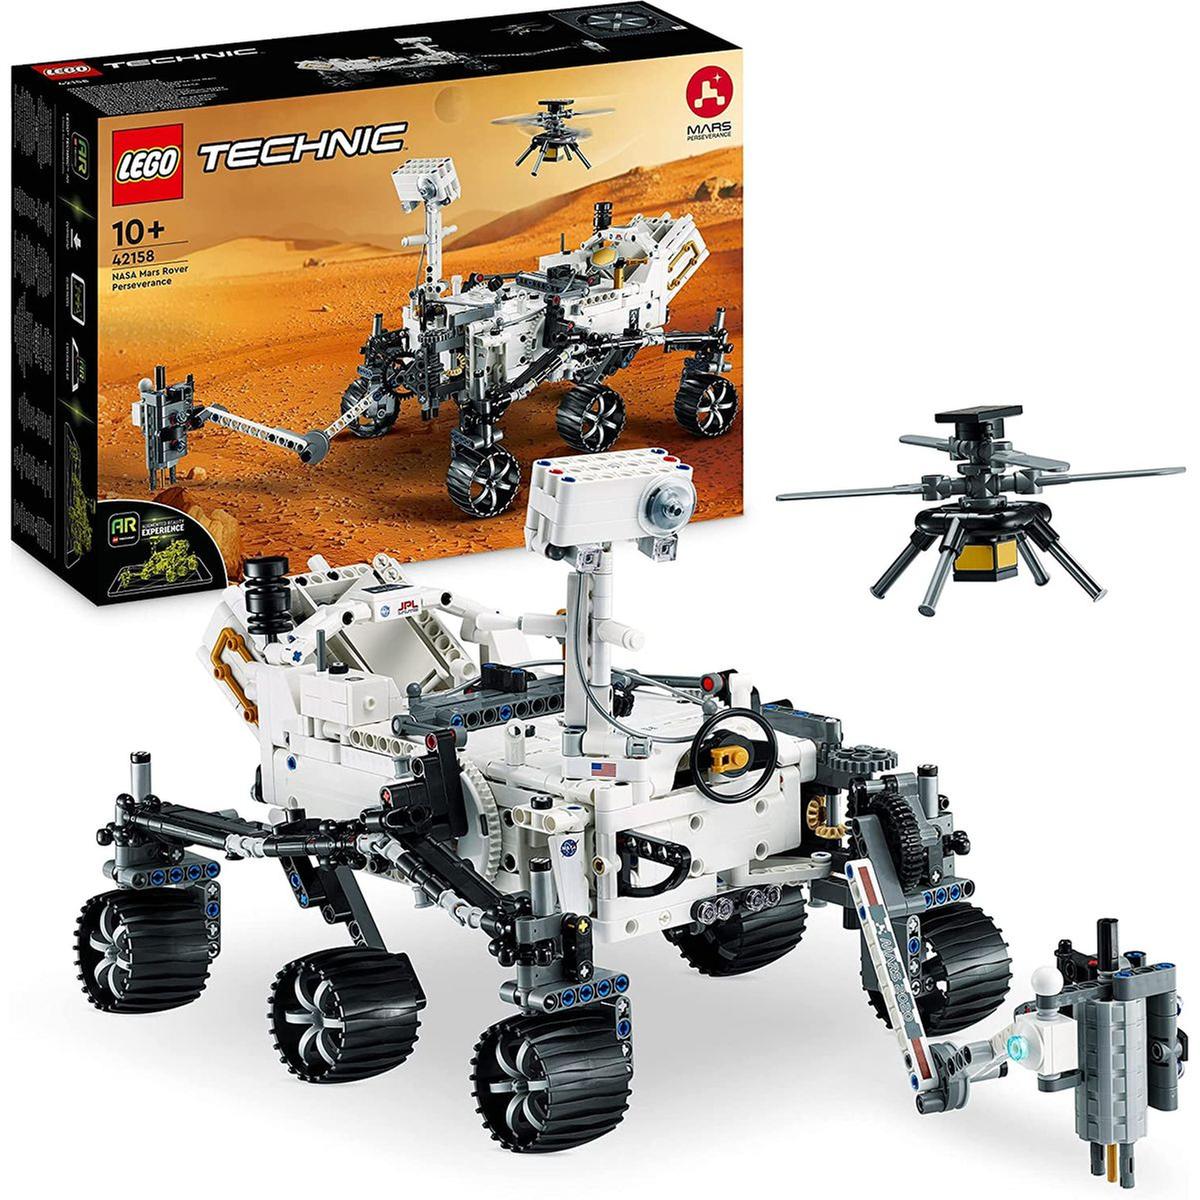 LEGO - Conjunto de construção veículo NASA Mars Rover Technic Lego 42158 |  LEGO TECHNIC | Loja de brinquedos e videojogos Online Toysrus